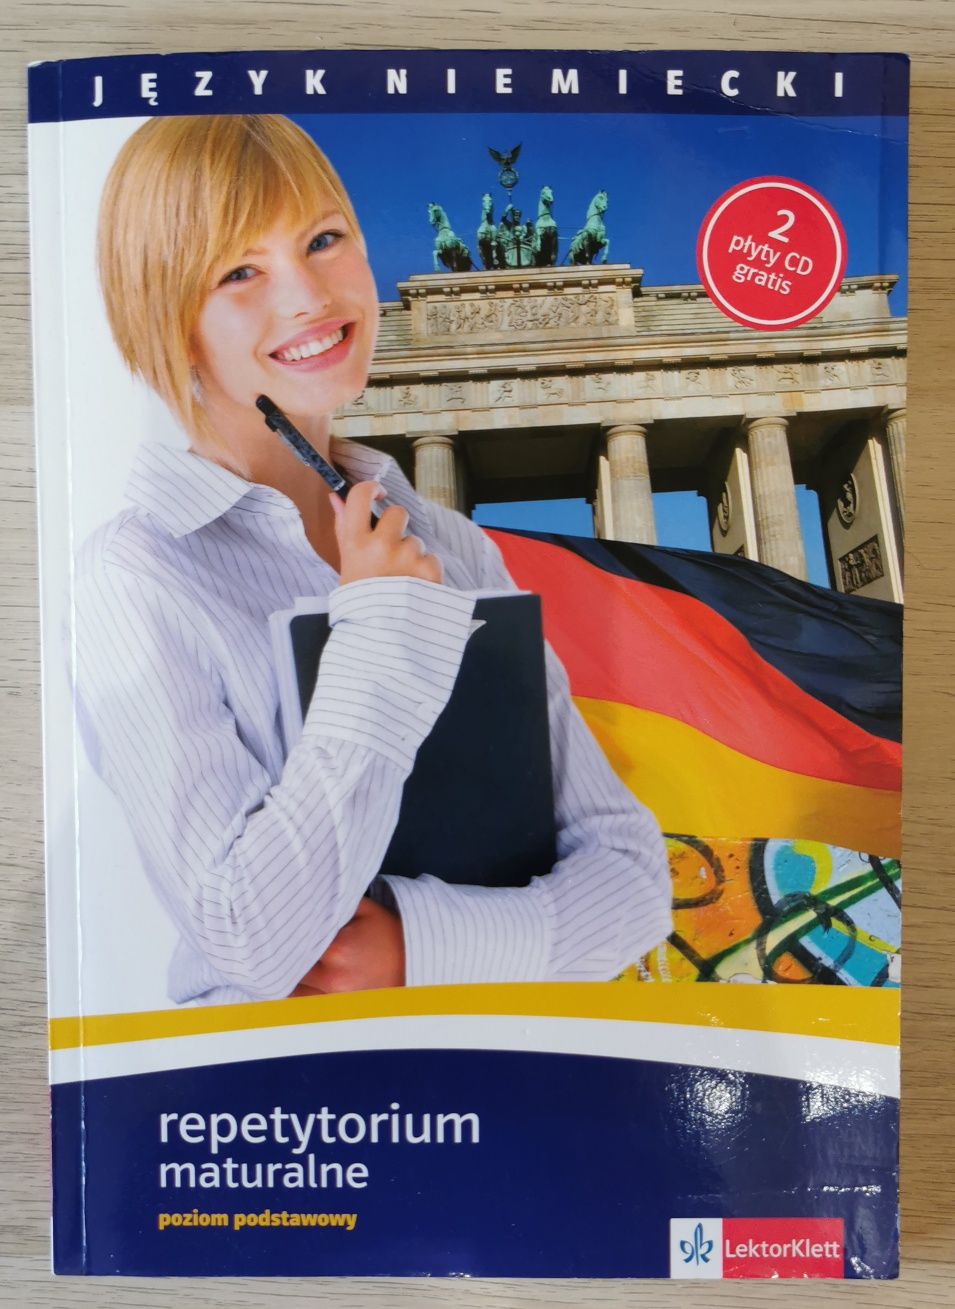 Repozytorium z języka niemieckiego + gratis